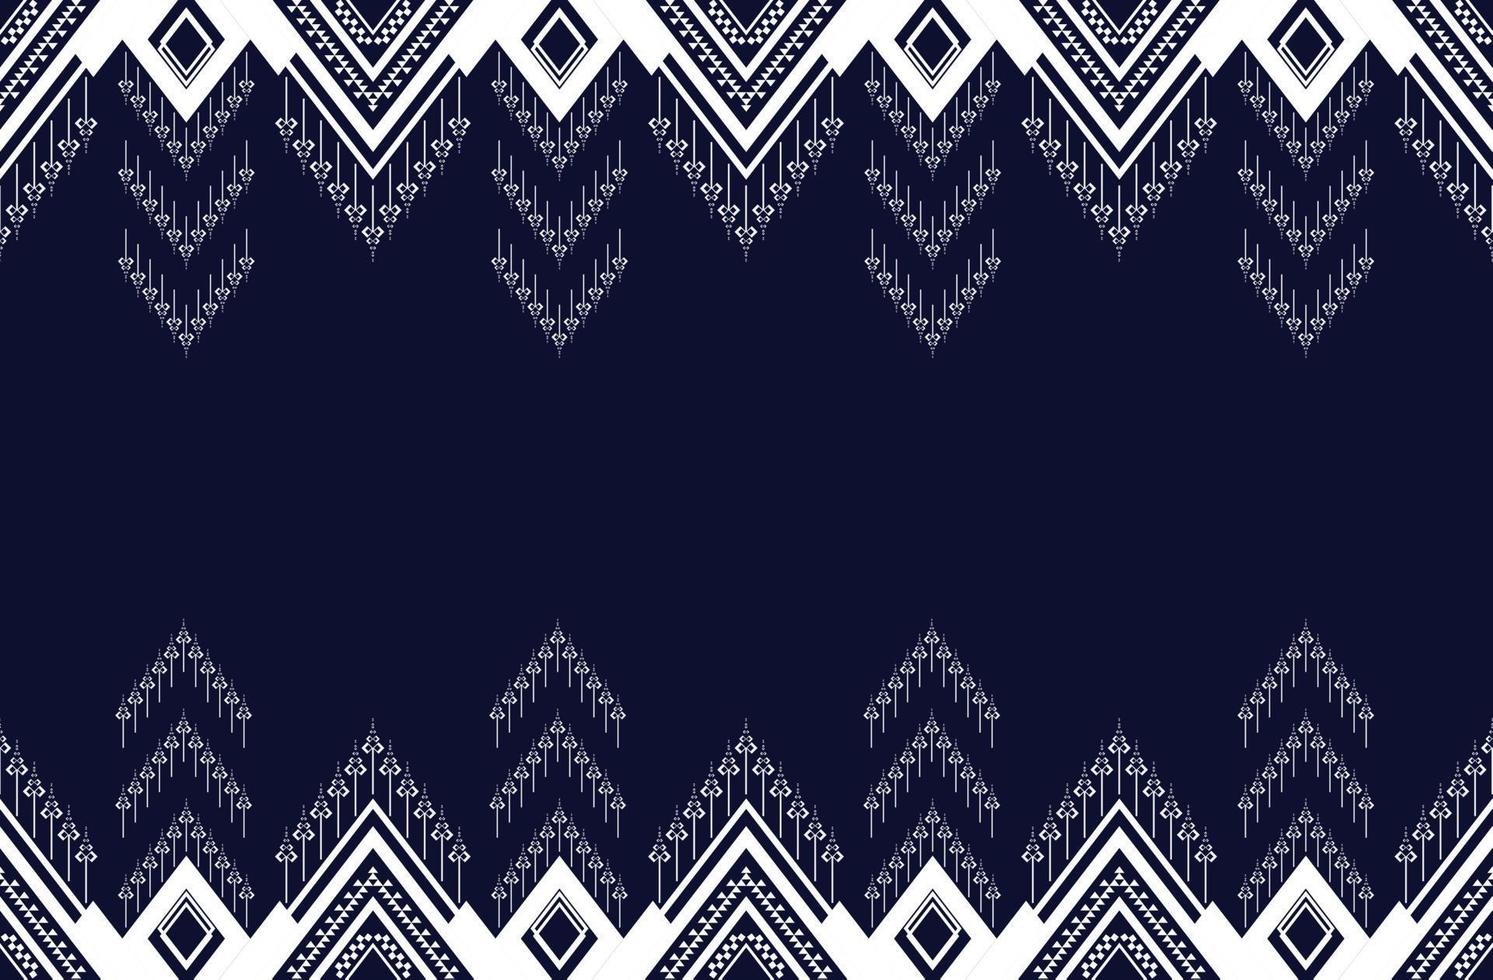 bordado de textura étnica geométrica padrão sem costura com design de fundo azul escuro usado em papel de parede, saia, tapete, papel de parede, roupas, embrulho, batik, tecido, folha usada em vetor, ilustração vetor